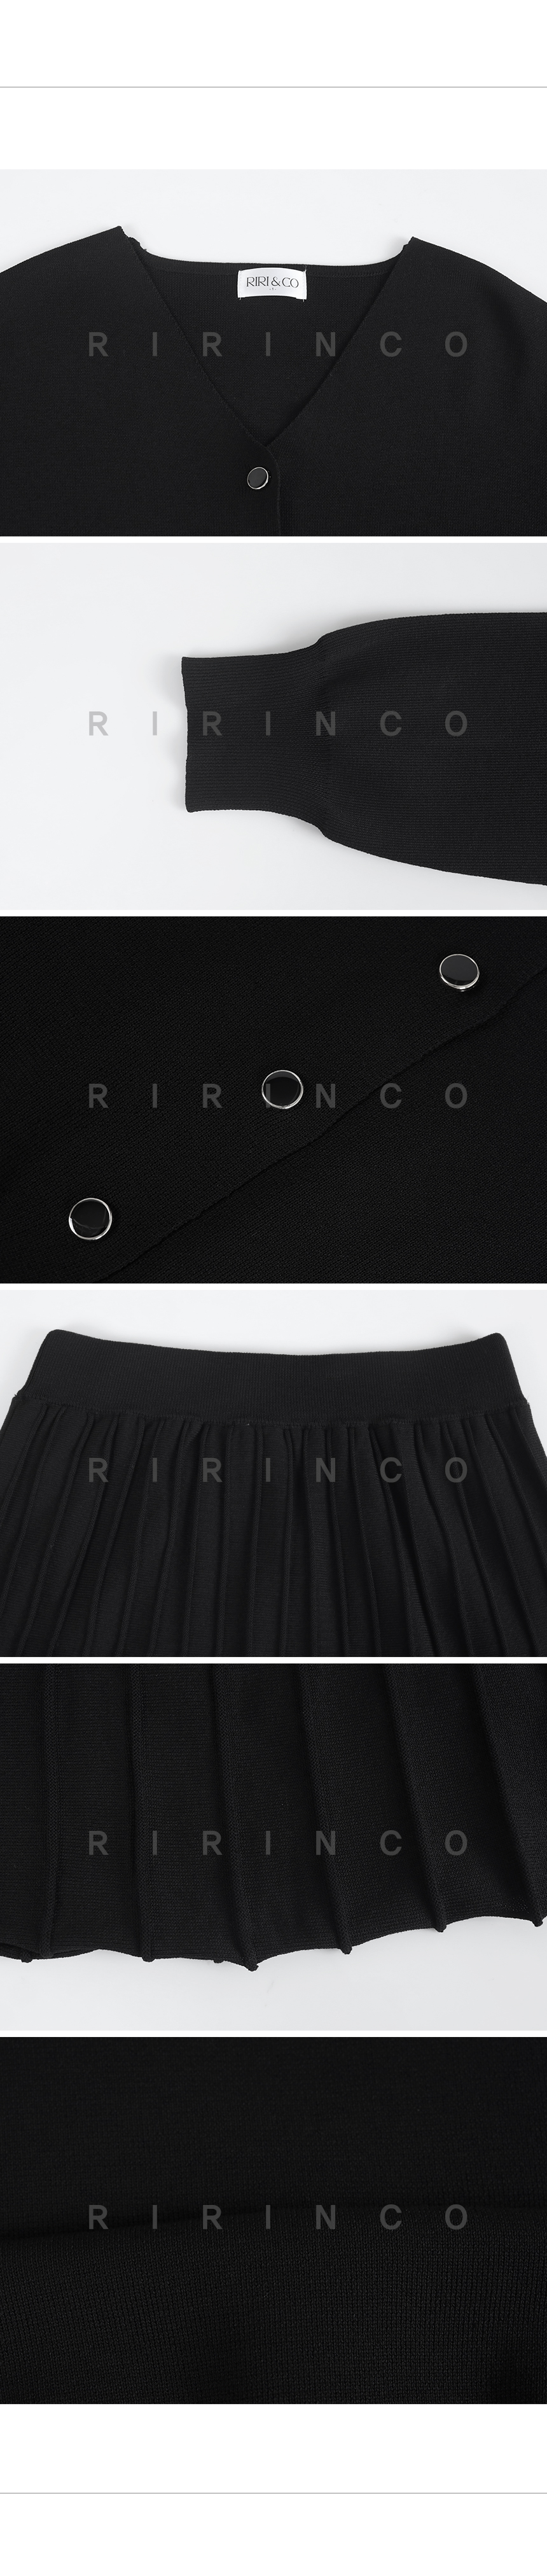 RIRINCO ニットVネックカーディガン&ウエストゴムプリーツスカート上下セット